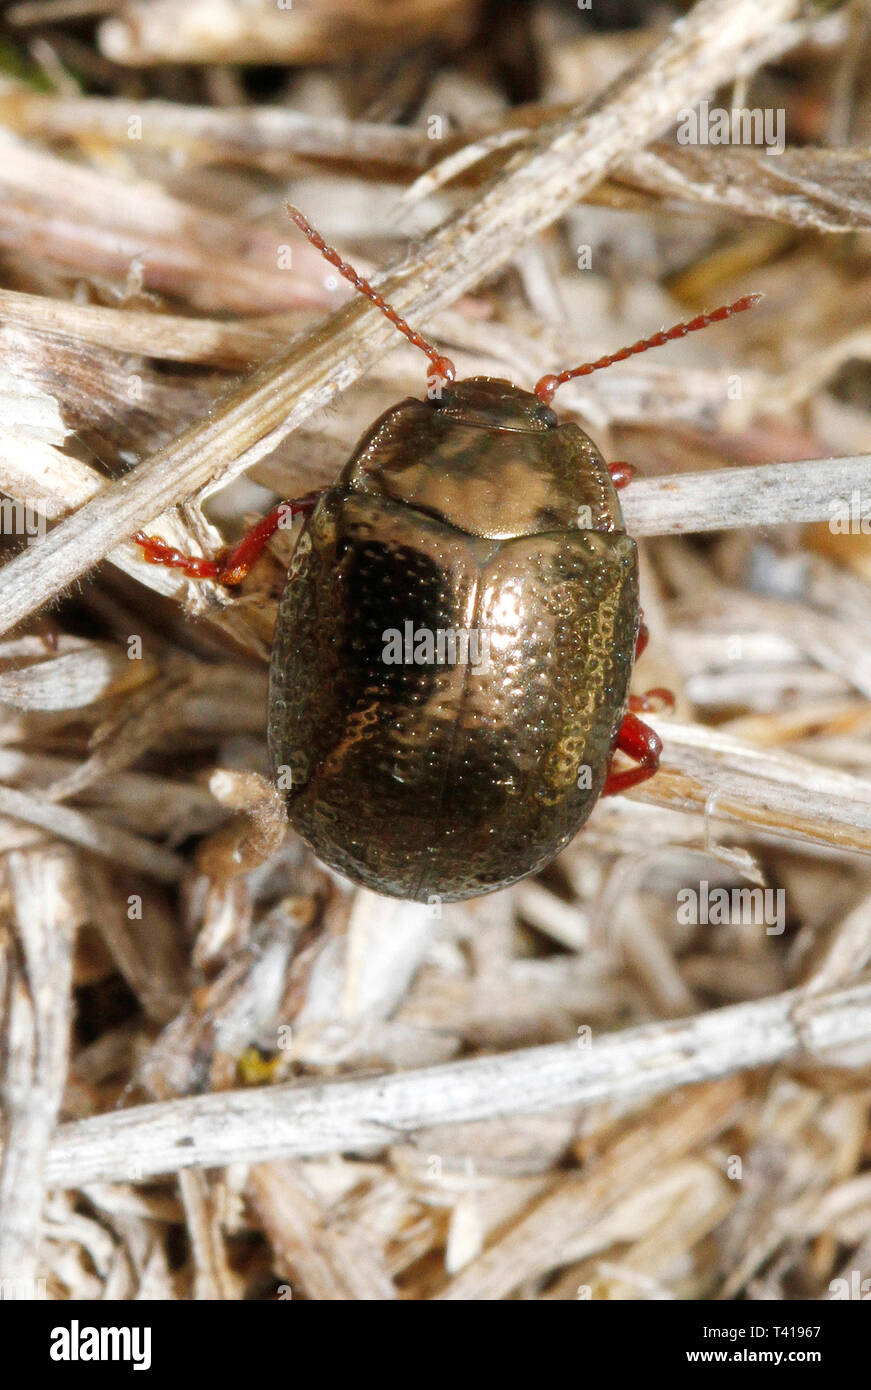 Close-up d'un scarabée, Palma, Majorque, Espagne Banque D'Images